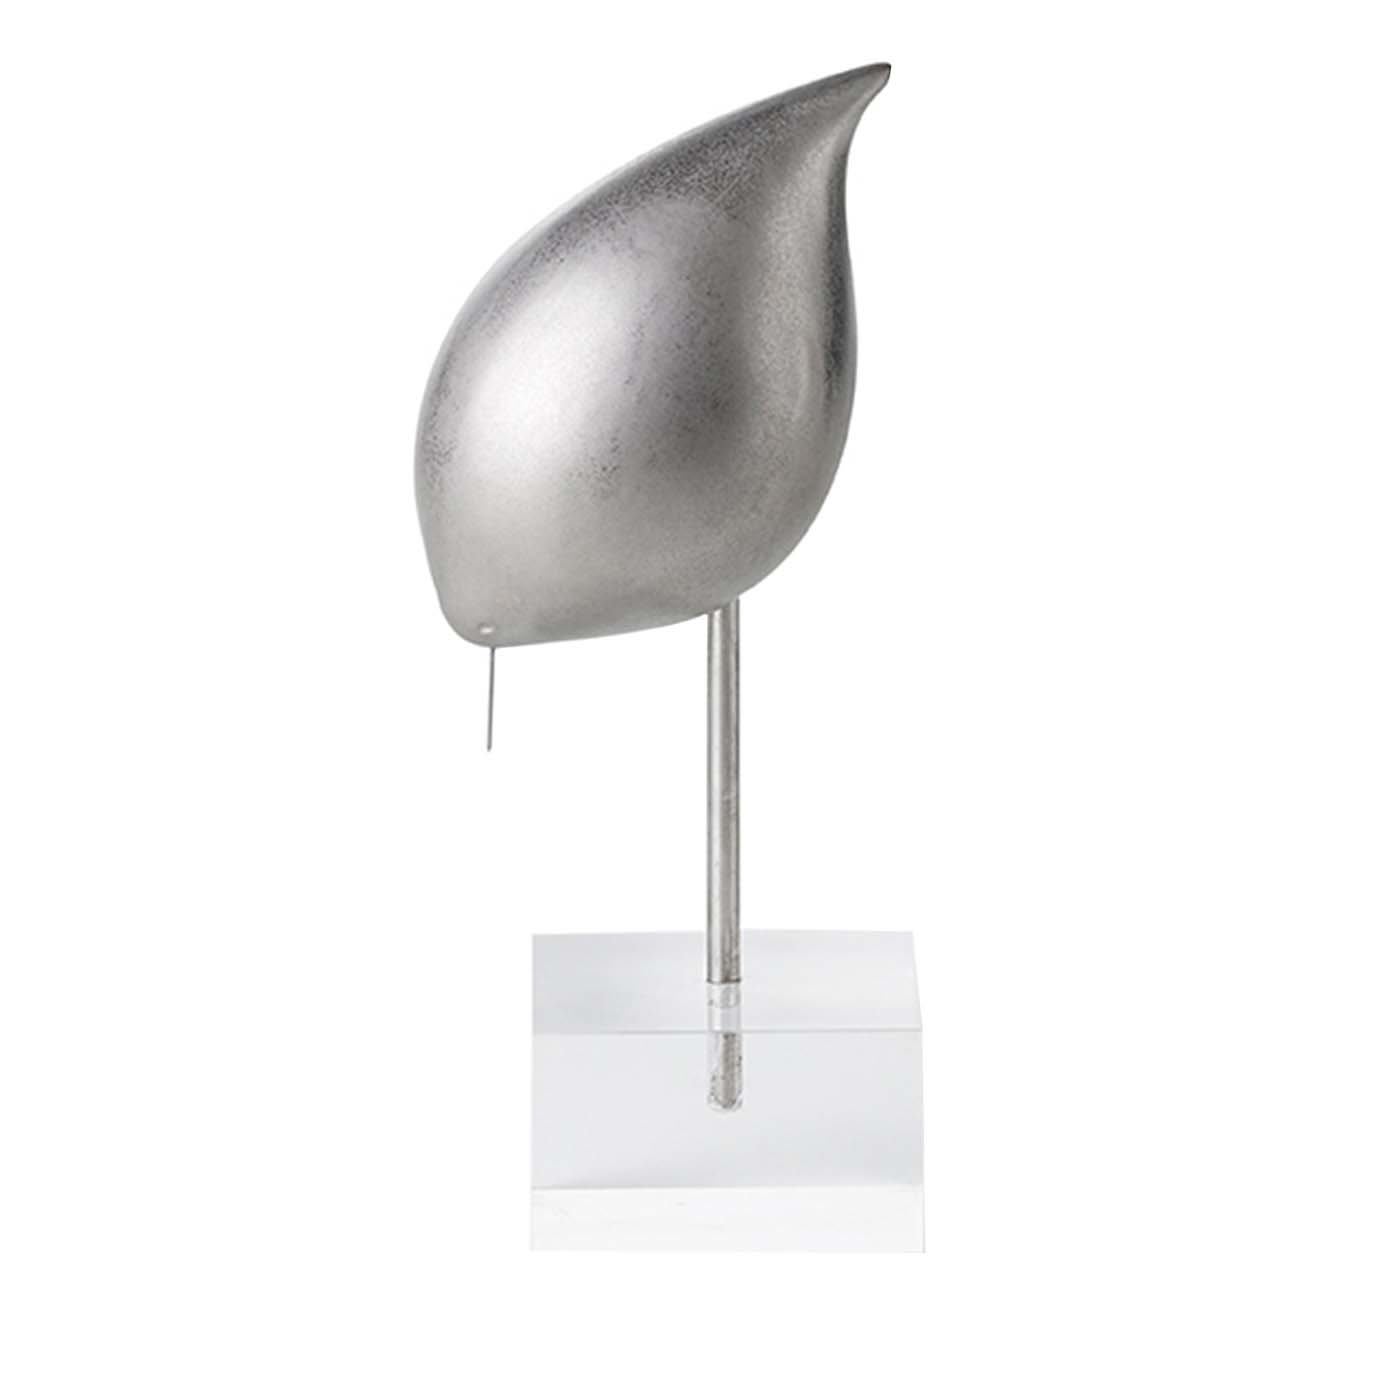 Silver Bird on a Stand by Aldo Londi #1 - Bitossi Ceramiche